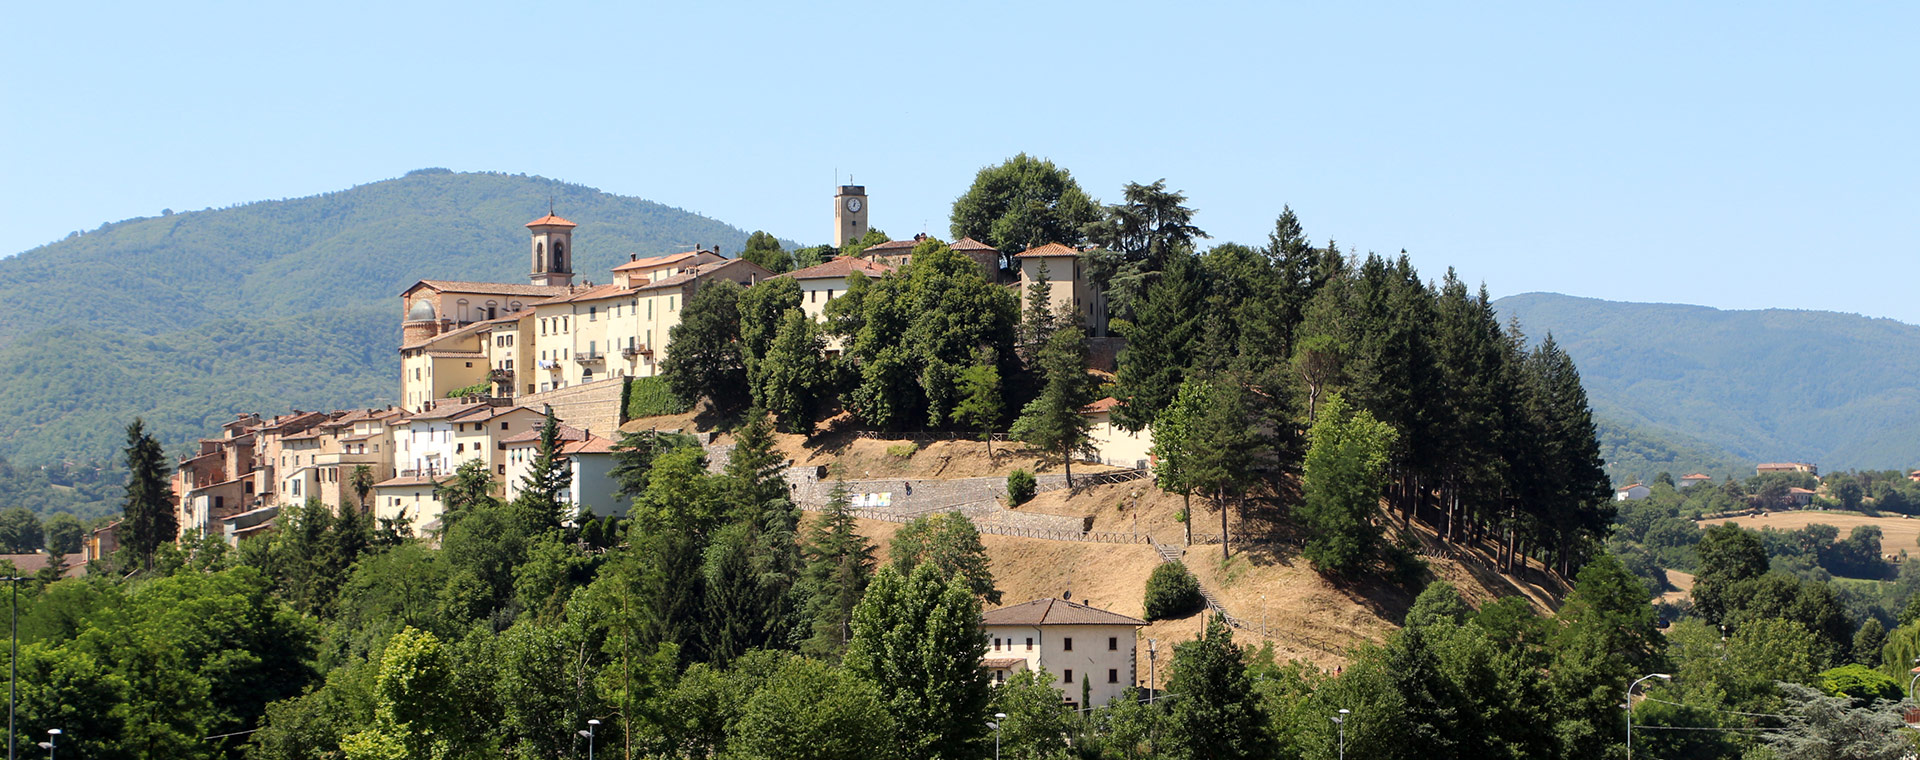 Le città della Toscana: a Sansepolcro in vendita una villa del 1600